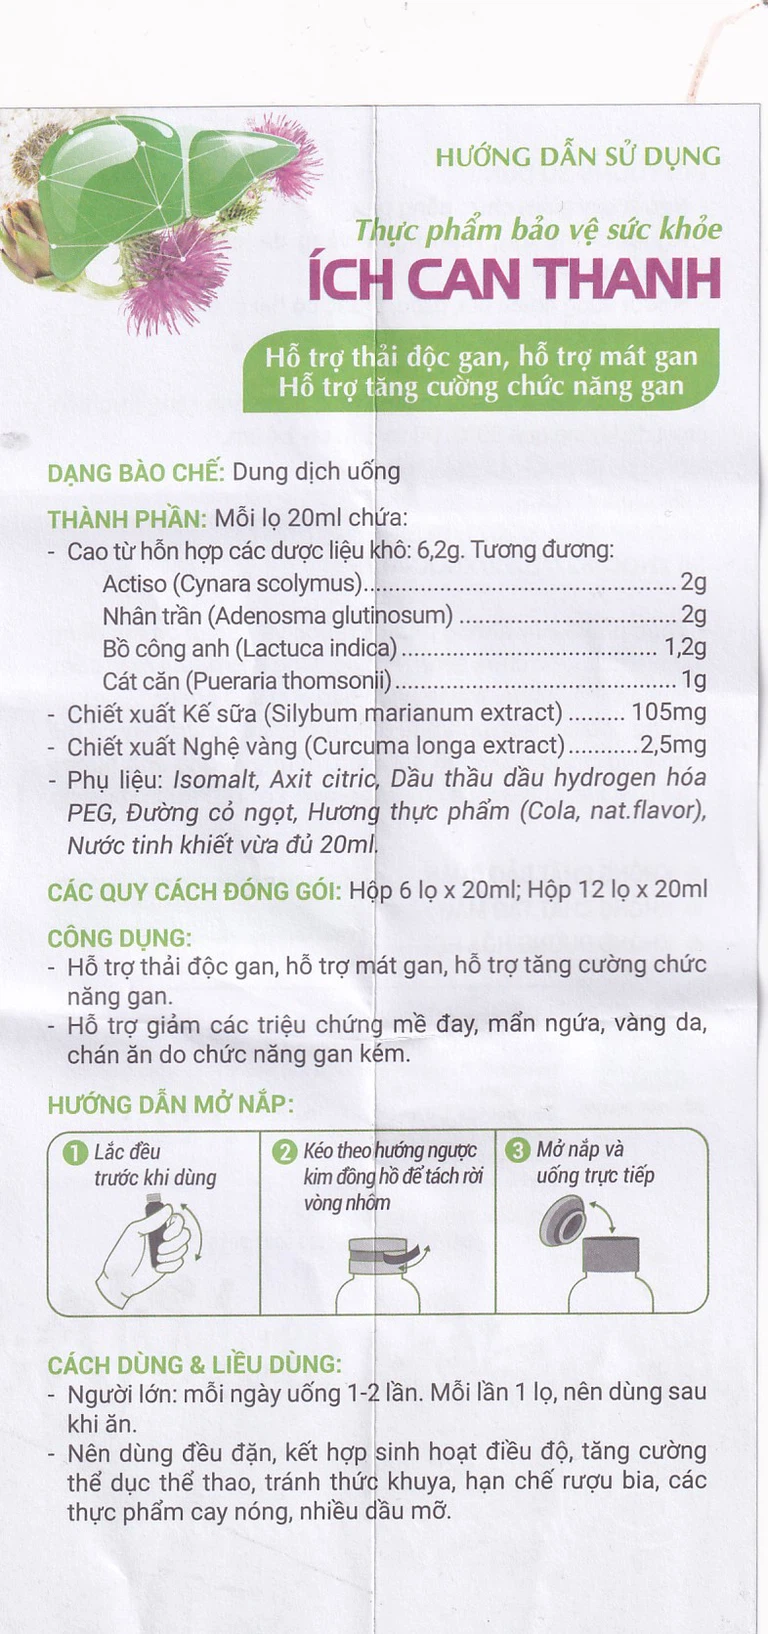 Thực phẩm bảo vệ sức khỏe Ích Can Thanh Hoa Linh hỗ trợ thải độc gan, tăng cường chức năng gan (6 lọ x 10ml)